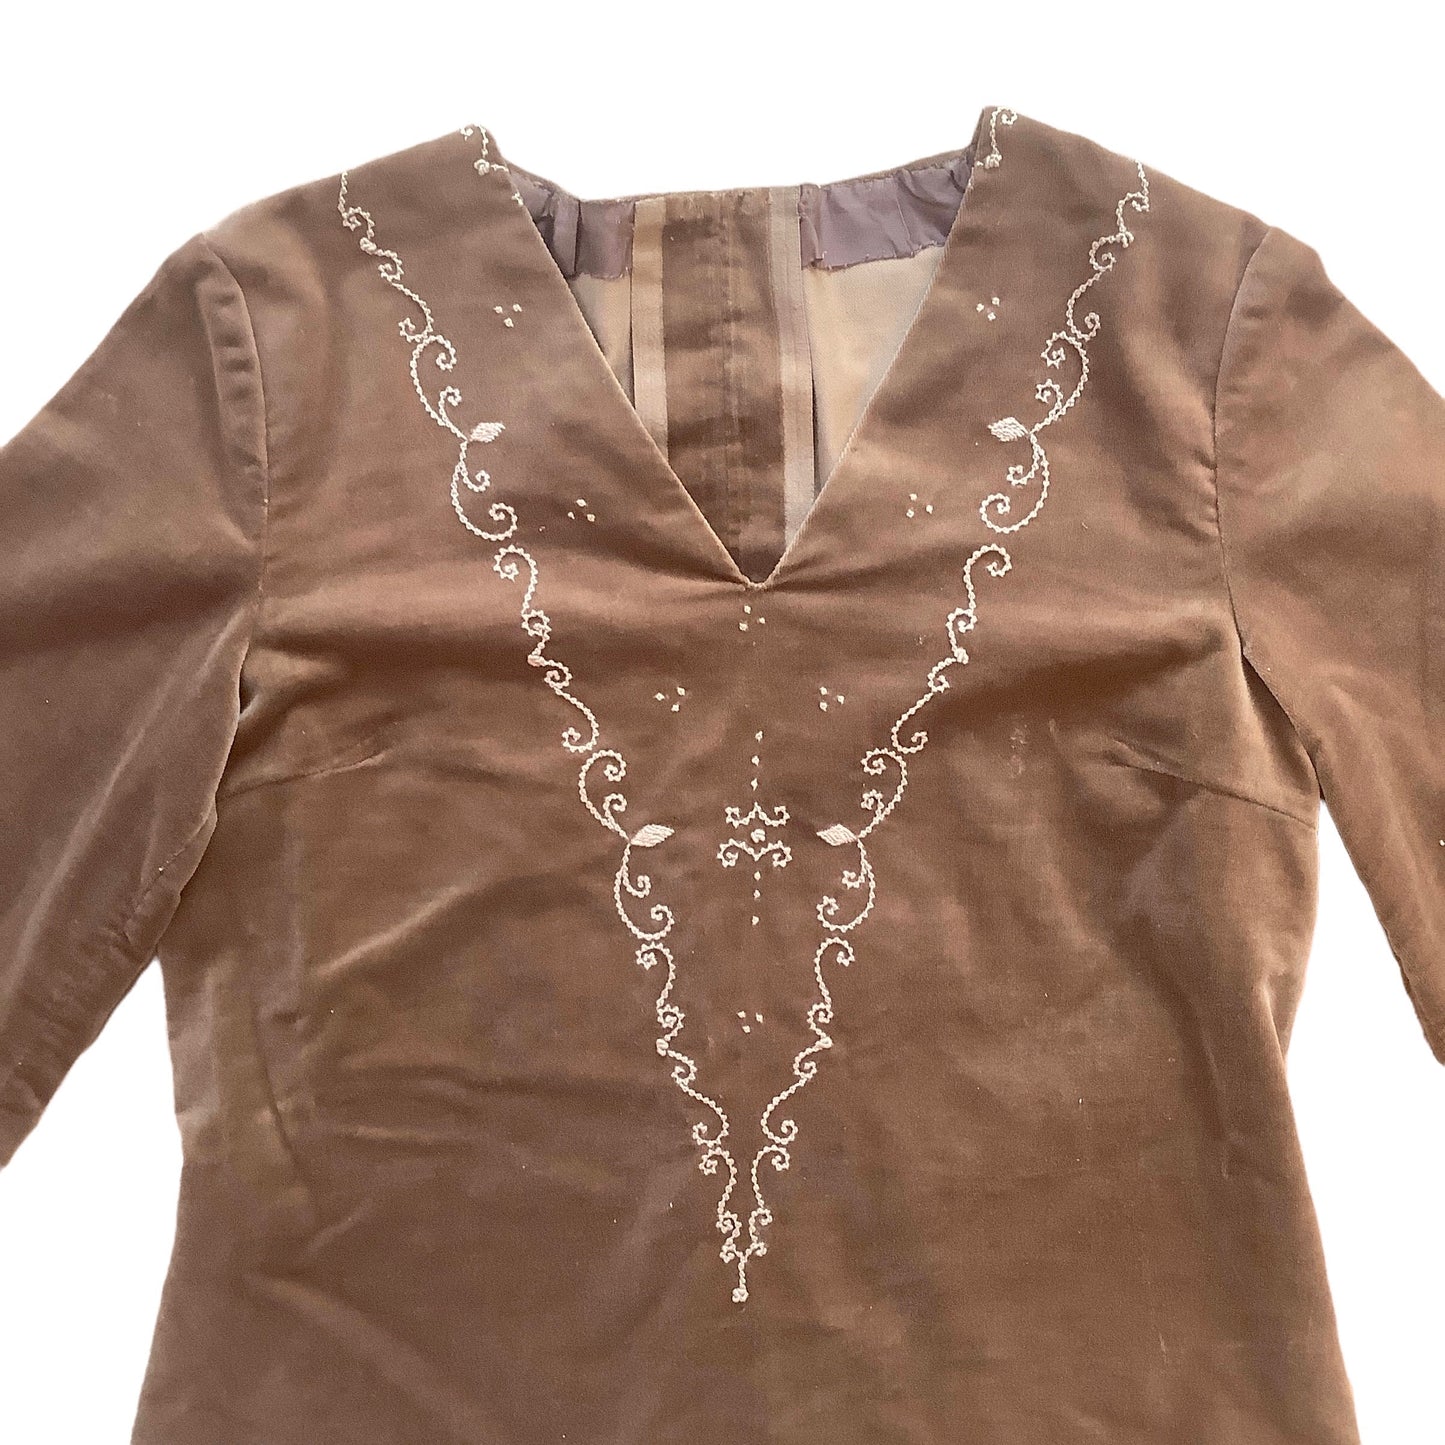 Vintage 60's Brown Velvet Dress / 10-12Y